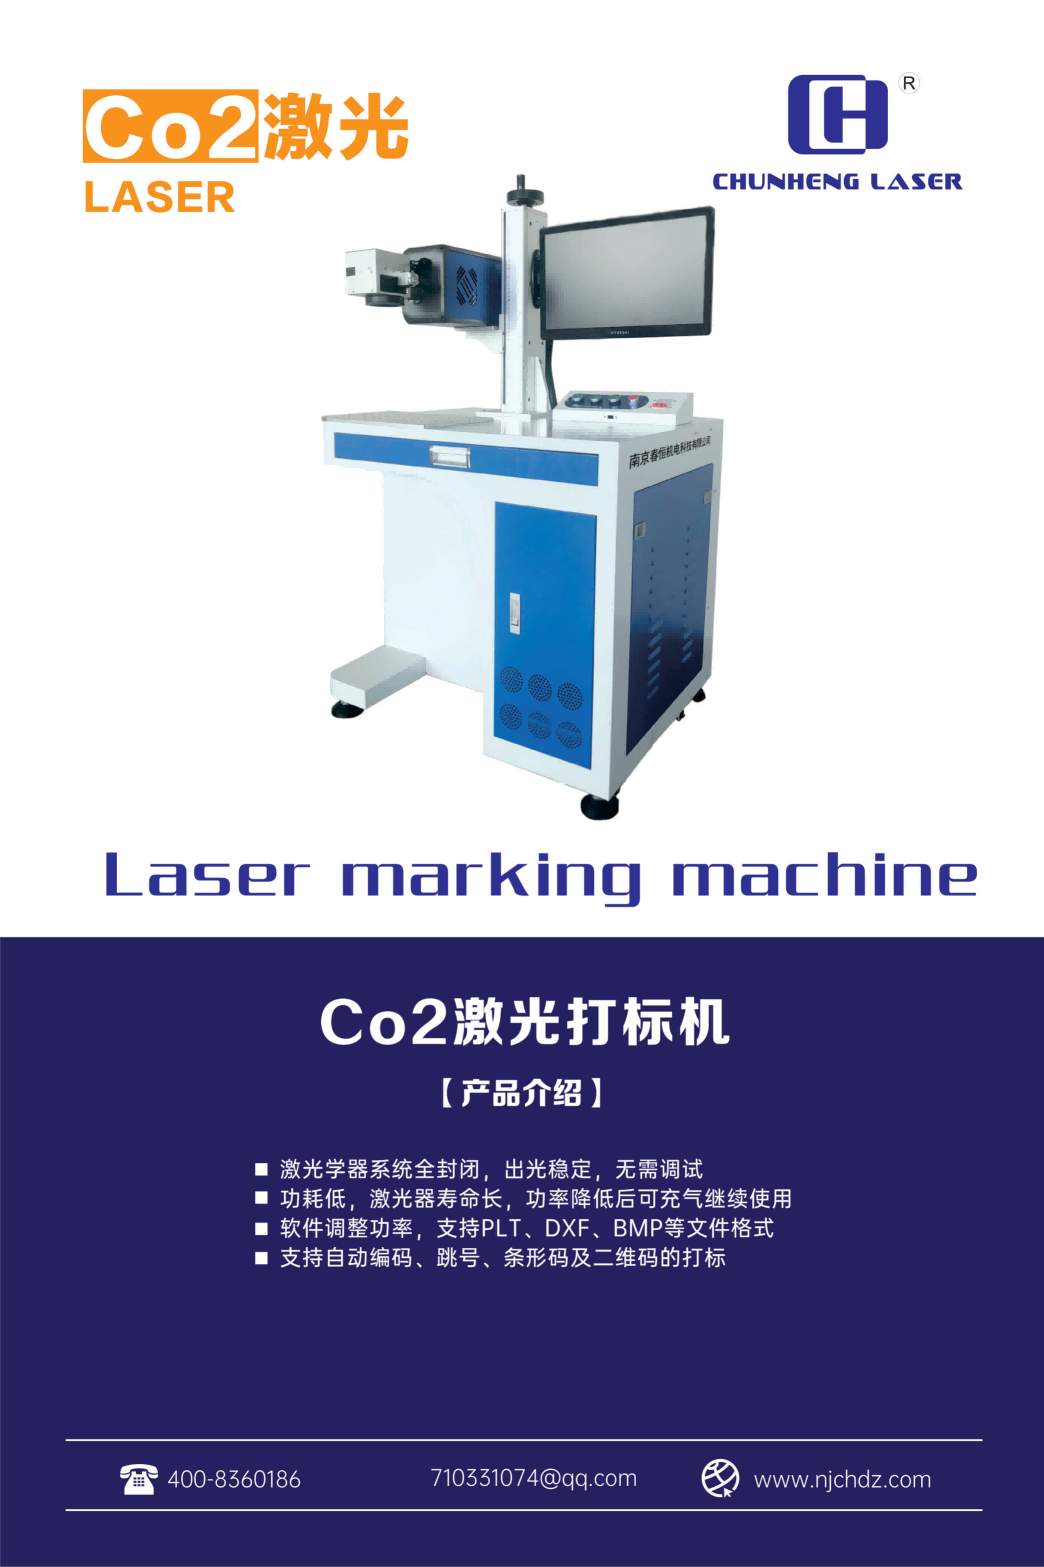 南京春恒CO2激光打标机RC-CO2-30w陶瓷塑料铅笔皮革布料亚克力紫外刻字机